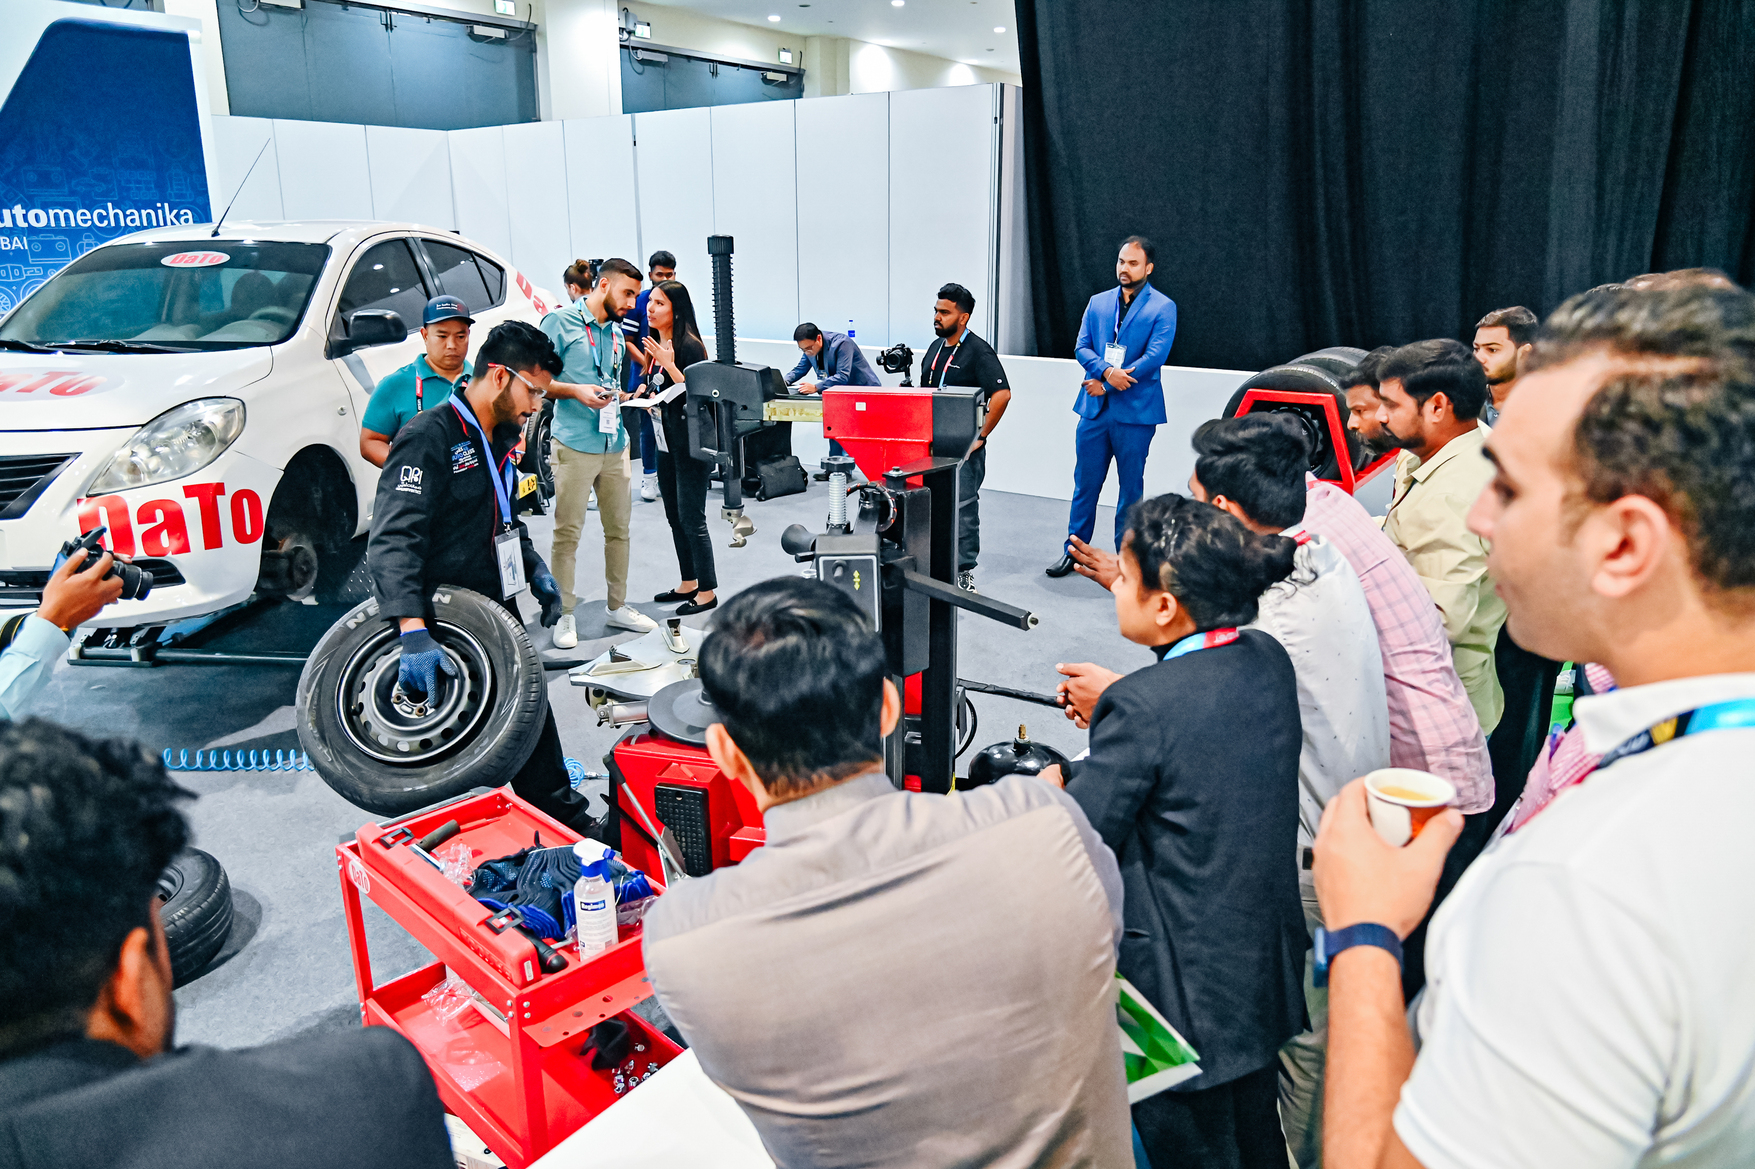 مبادرة أفريكونيكشنز تعود مجدداً في الدورة التاسعة عشر من معرض أوتوميكانيكا دبي